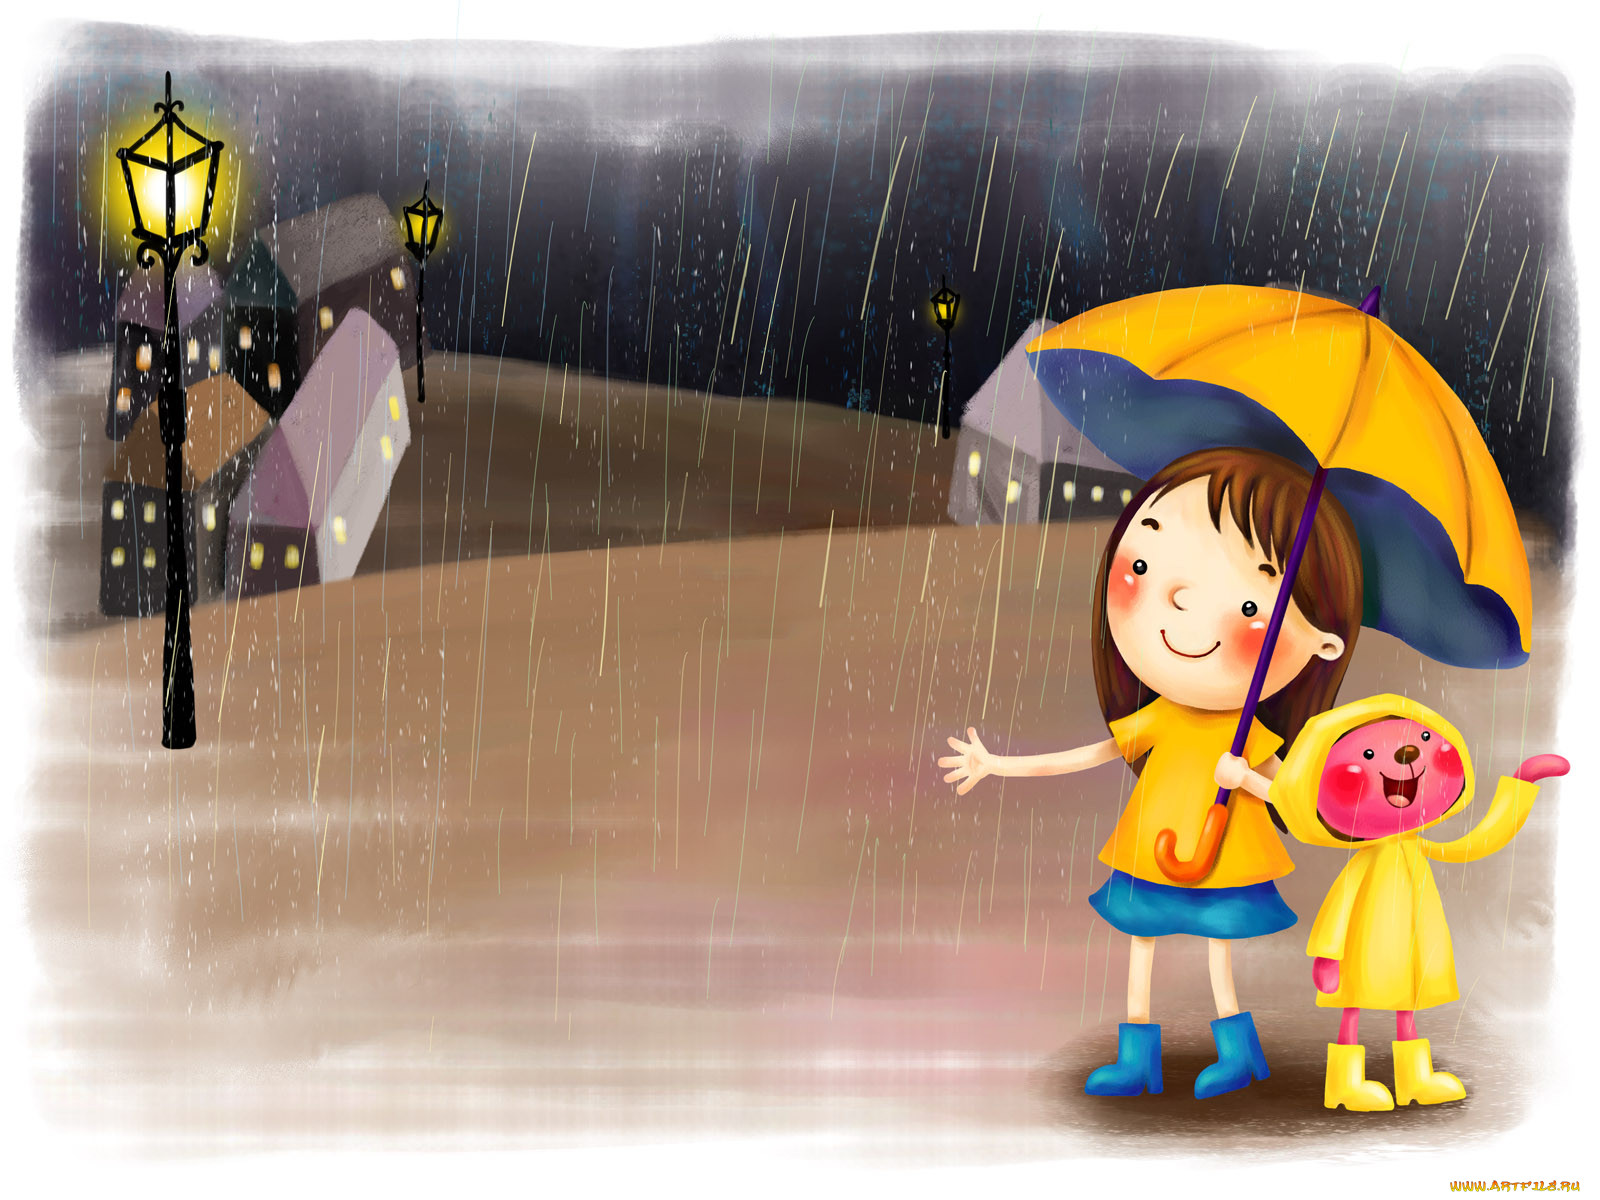 Немножко дождик. День прогвлов под Дождкм. Дети дождя. Дождливый день. Дождь рисунок.